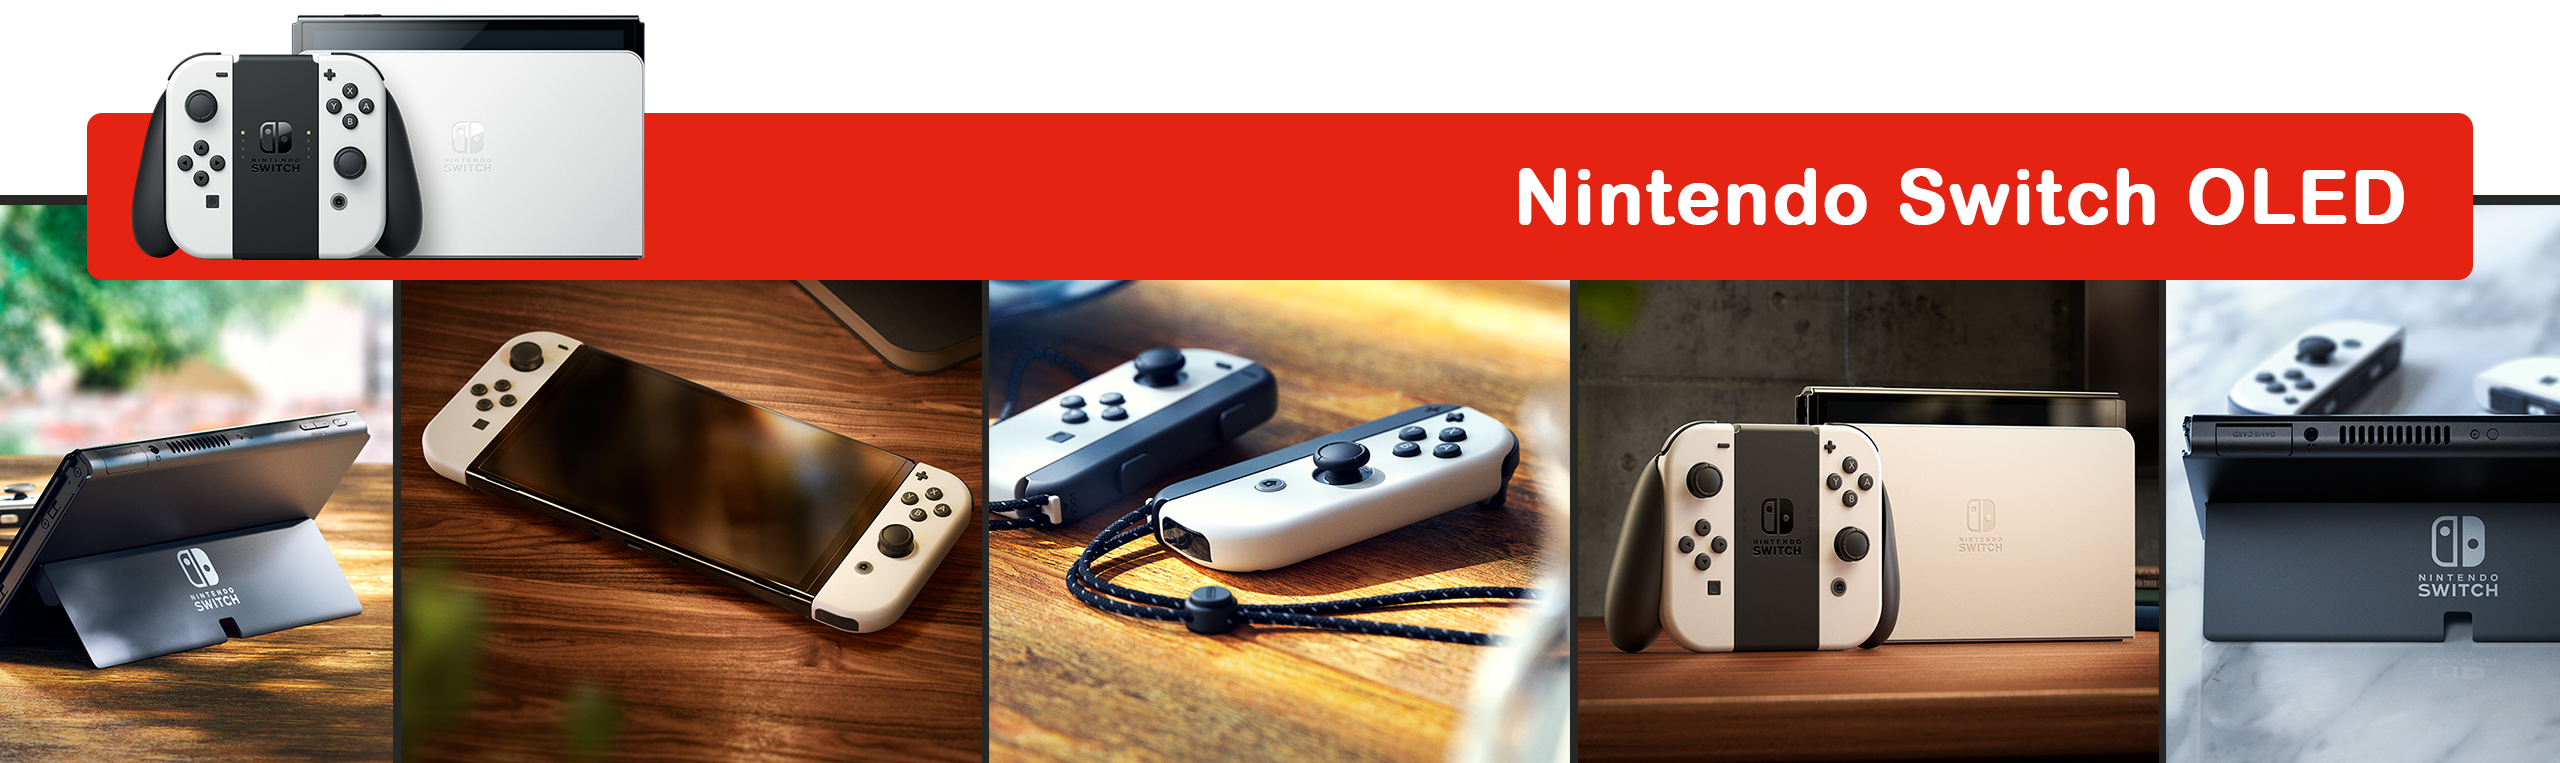 Die Nintendo Switch Lite ist perfekt für ein Handhelderlebnis - Bei GameStop sichern